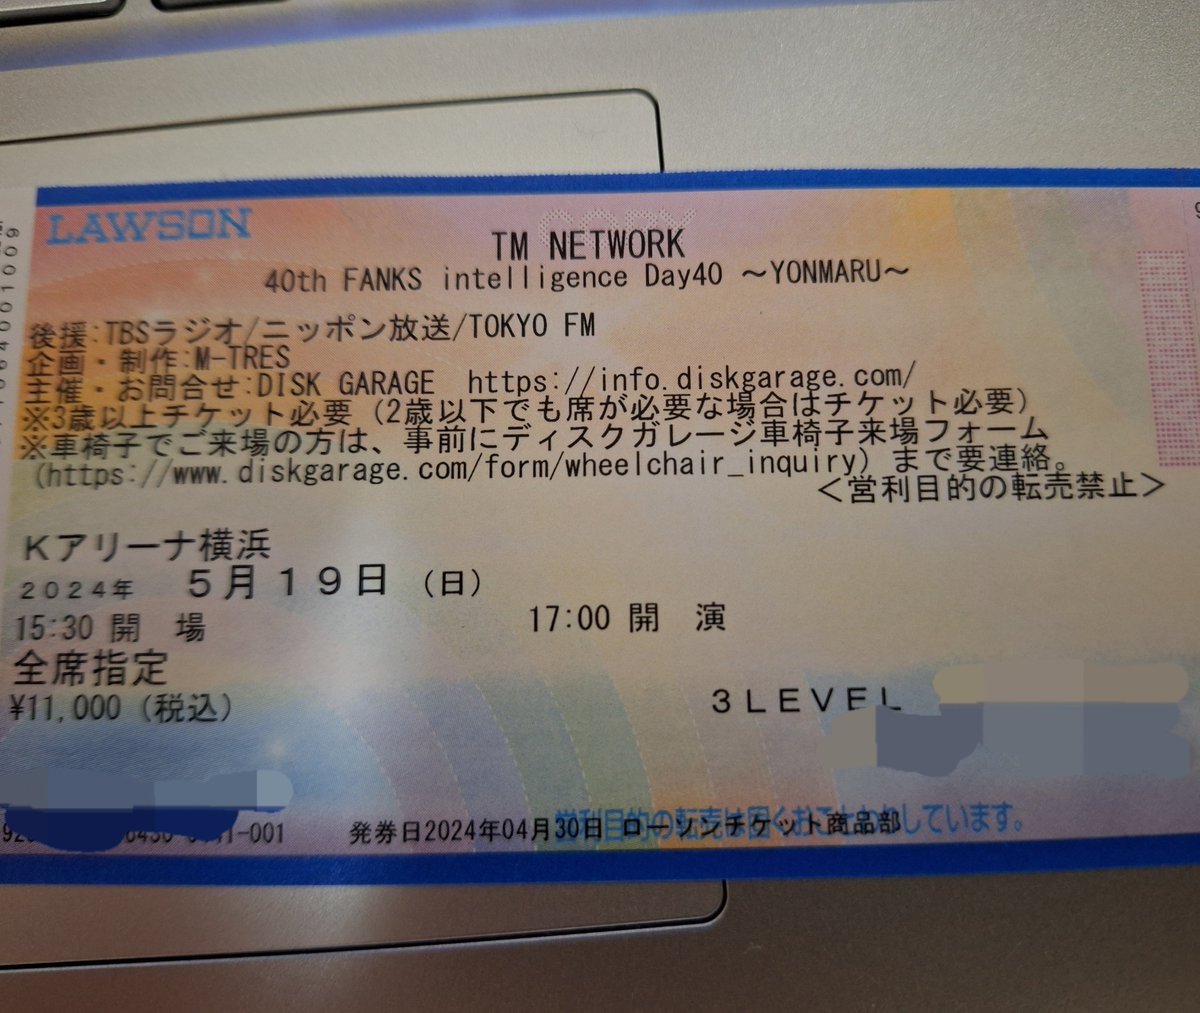 5/19のヨンマル横浜のチケット届いた！
3LEVELなら期待してもいいですか？

#TMNETWORK
#YONMARU
#Kアリーナ 
#FANKS